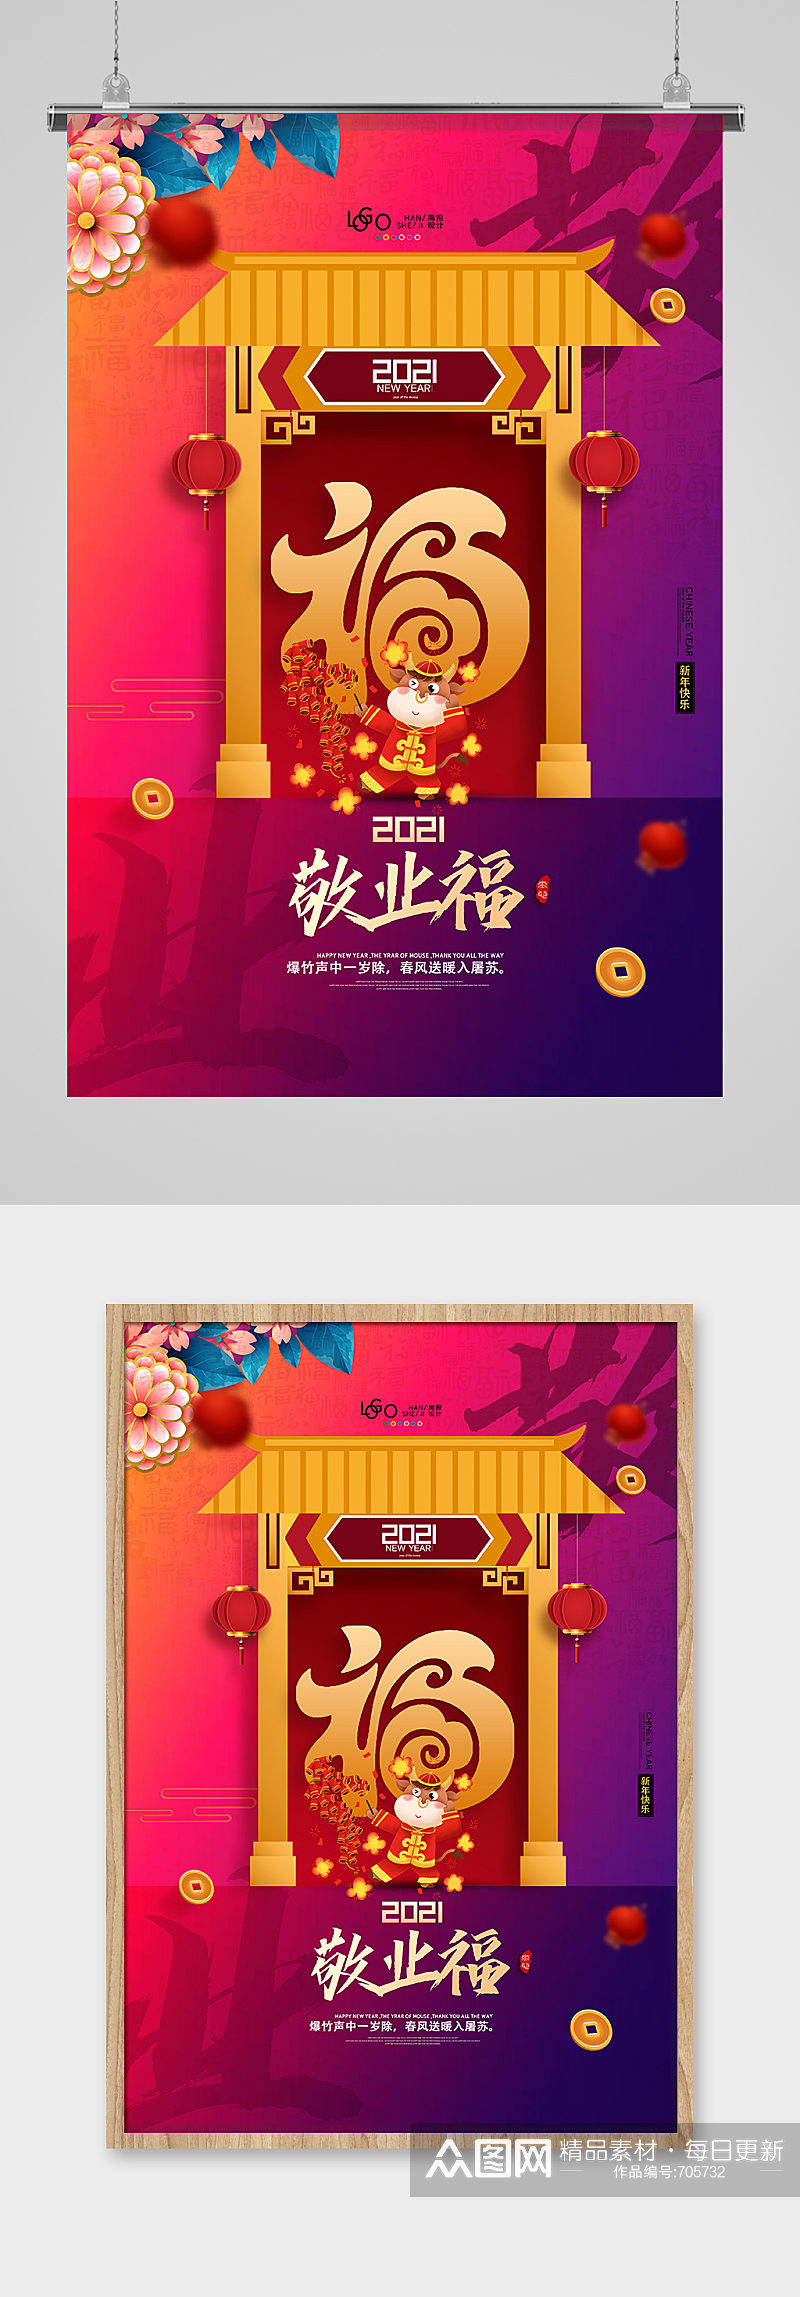 简洁中国风集五福敬业福活动系列海报素材